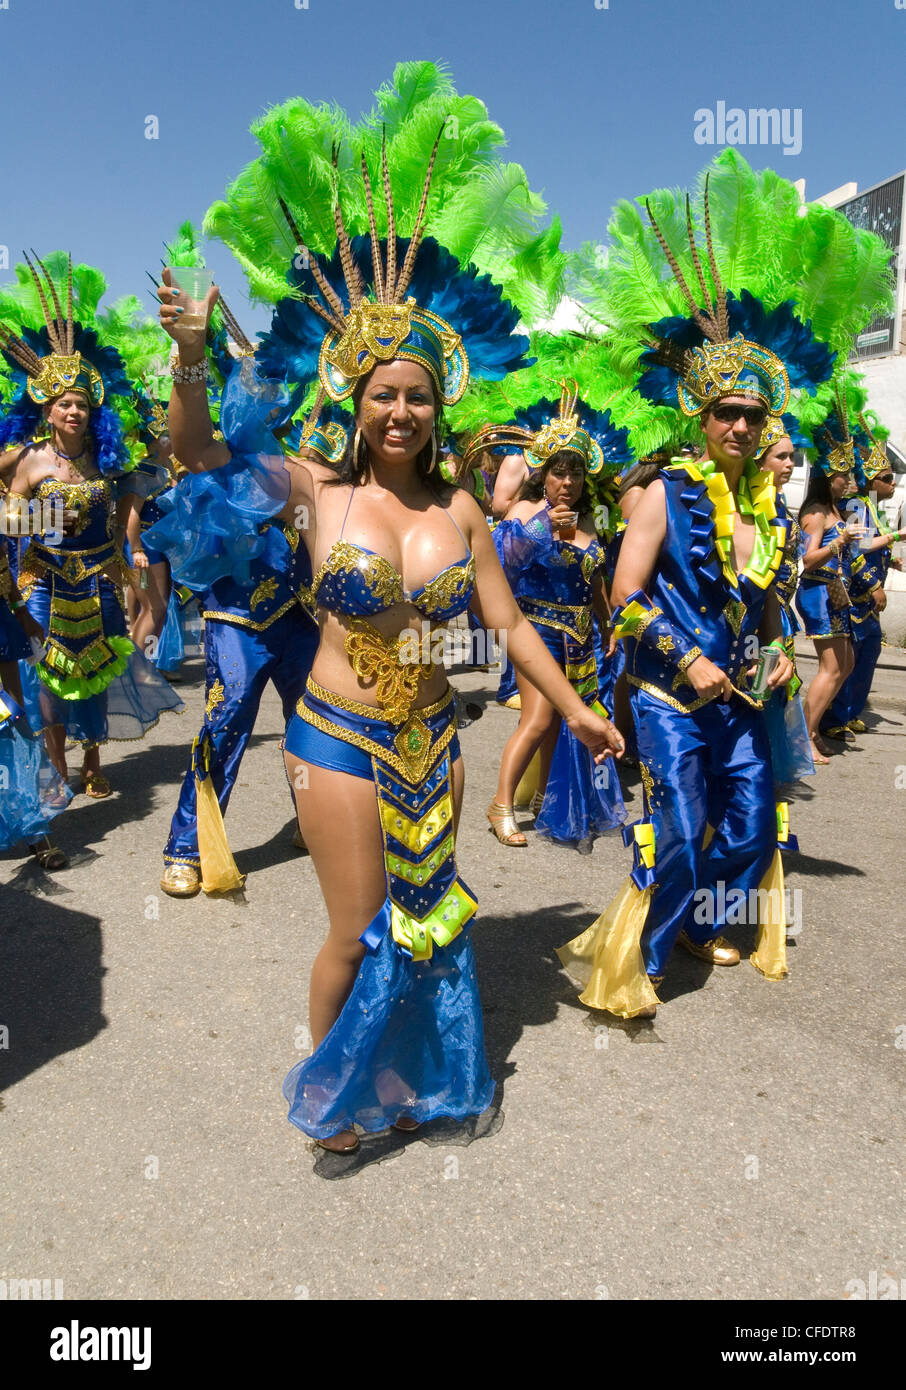 Karibischen Karneval, März 2011, San Nicolas, Aruba, Niederländische Antillen, West Indies, Karibik, Mittelamerika Stockfoto